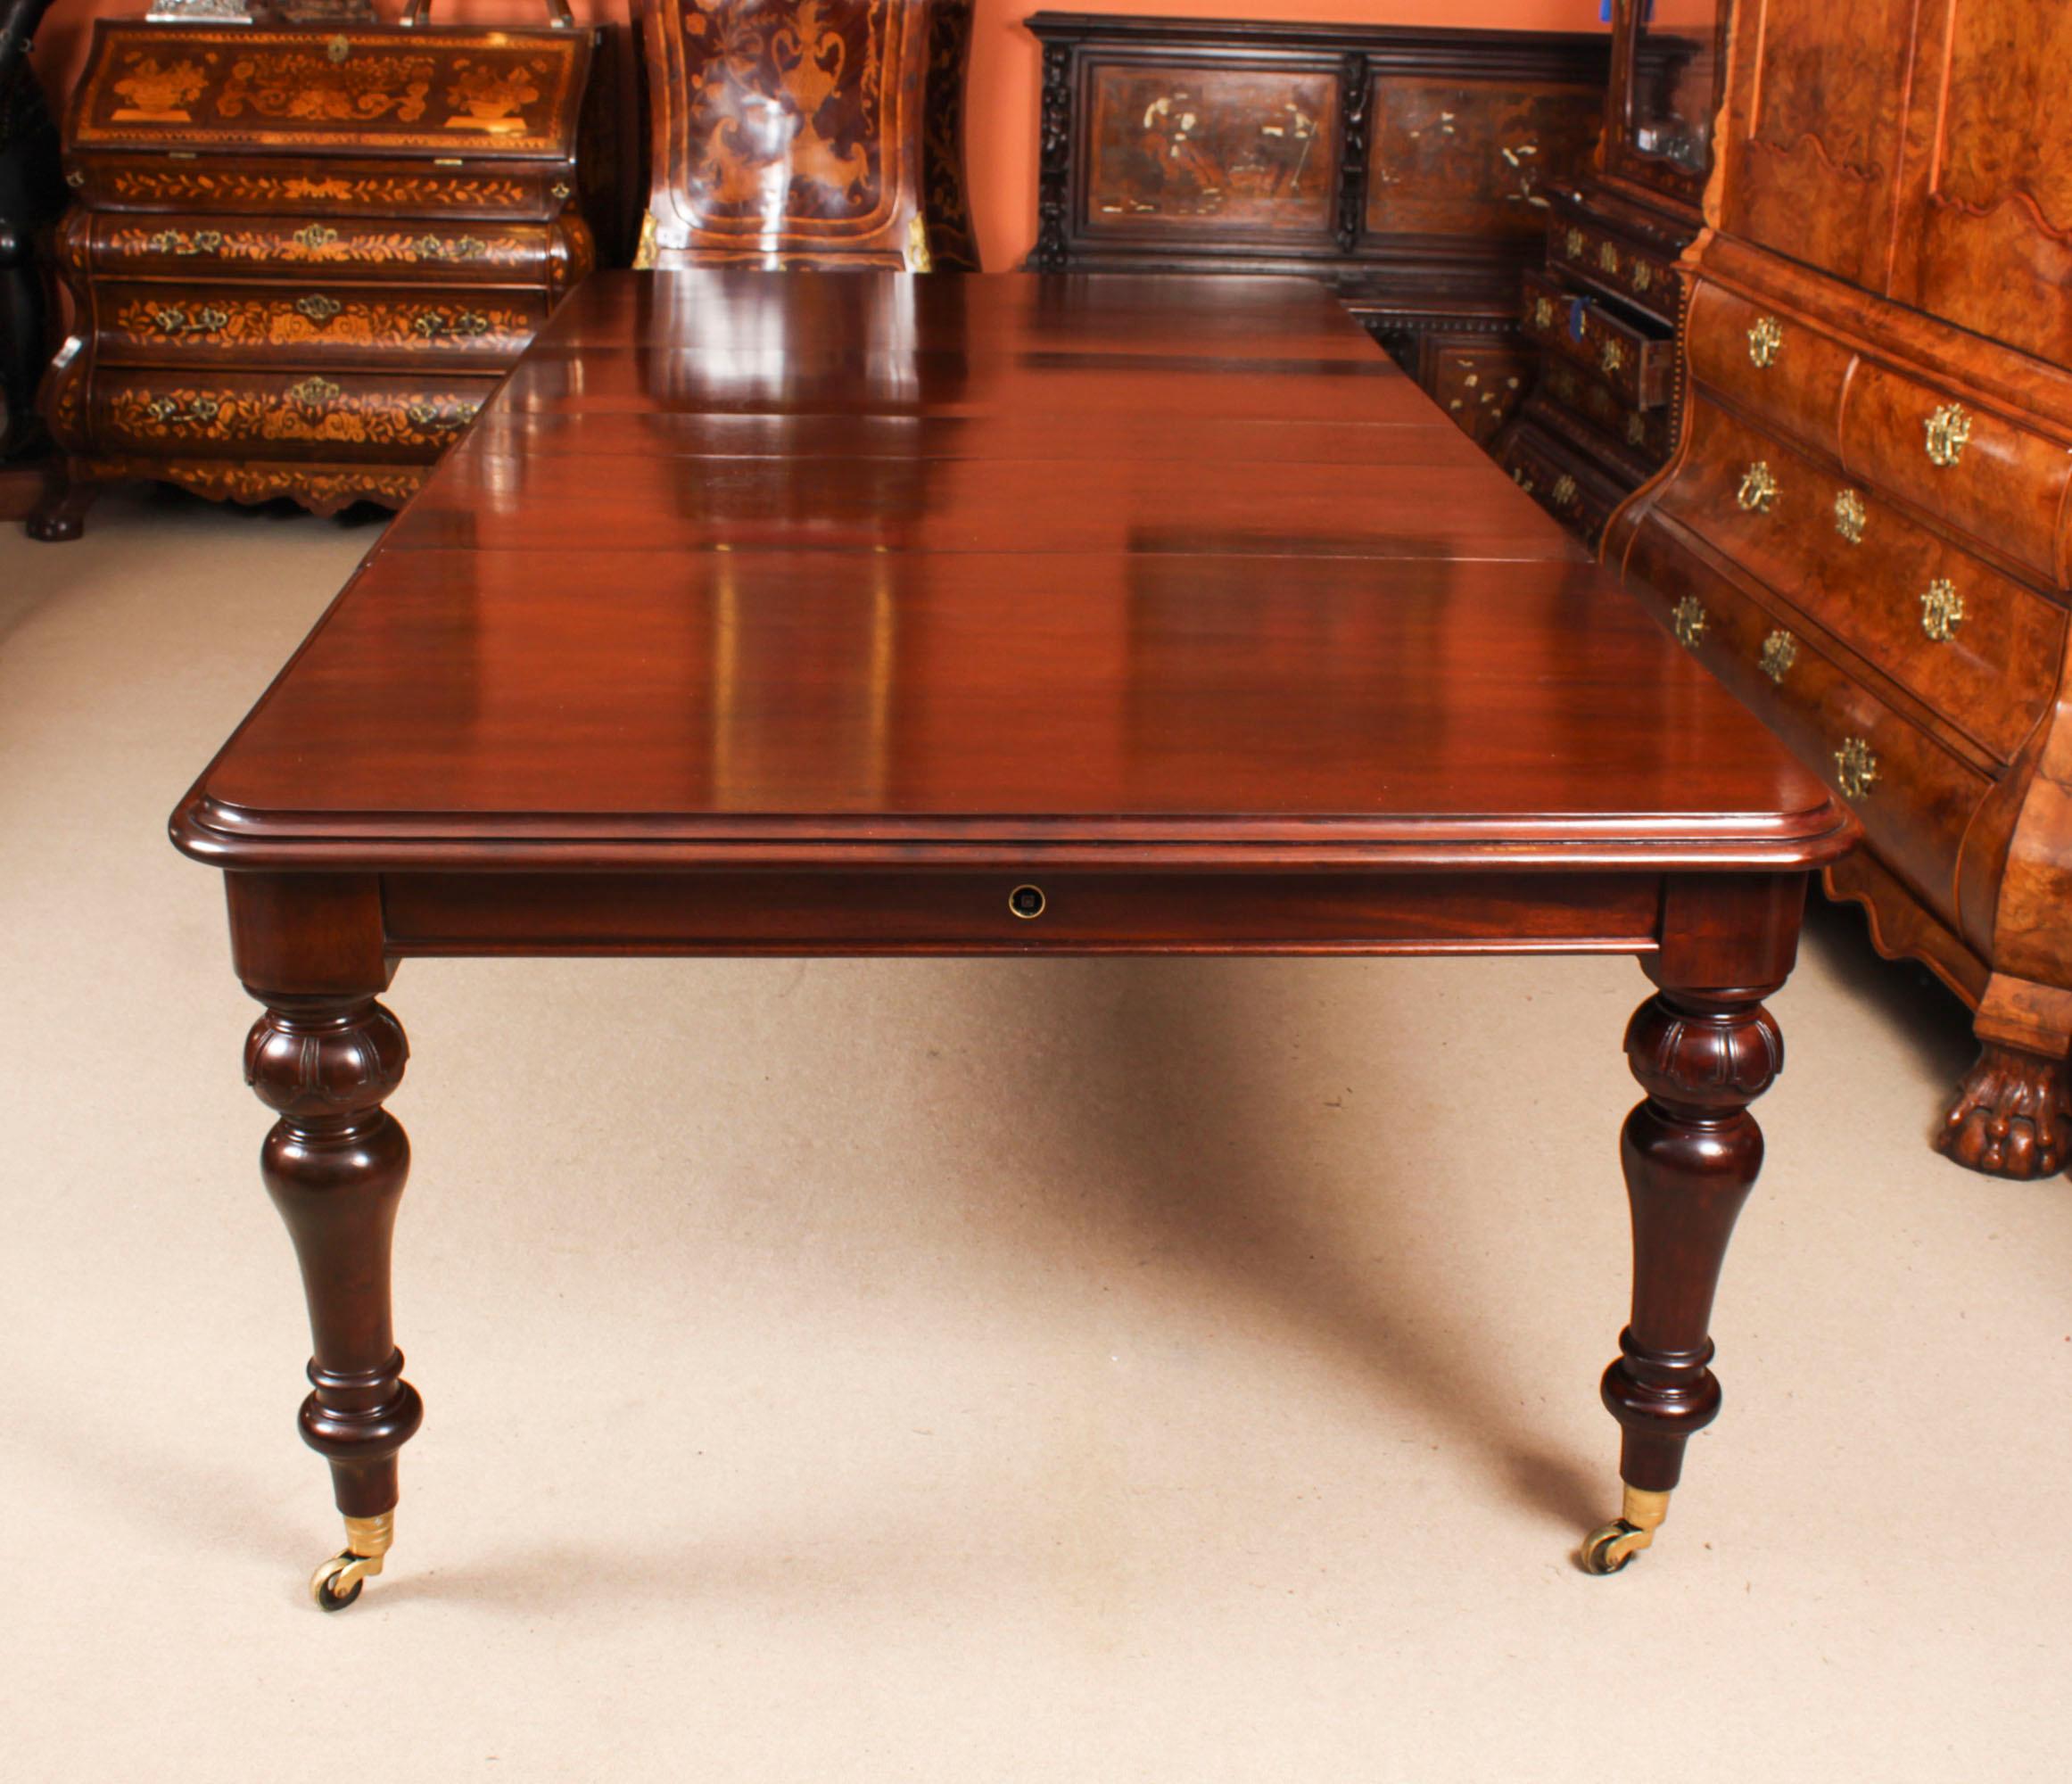 Milieu du XIXe siècle Ancienne table de salle à manger William IV à rallonge de 10 pieds C1835 19ème siècle